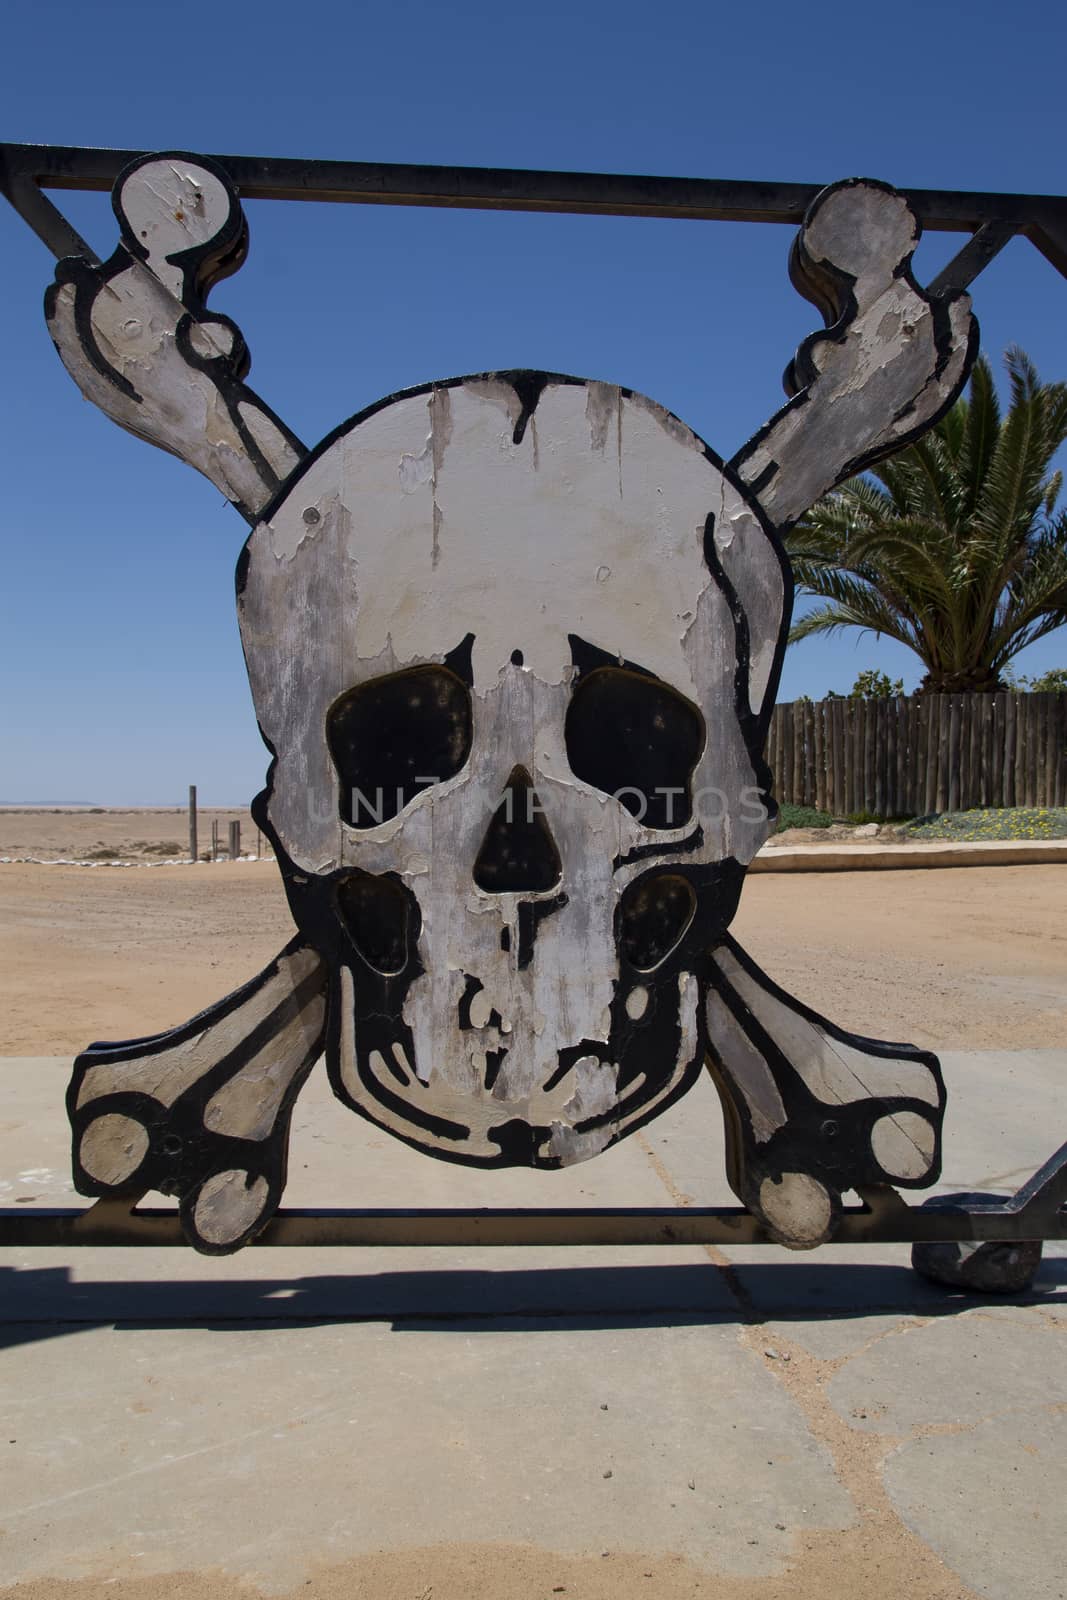 Ugabmund gate at Skeleton Coast National Park, Namibia